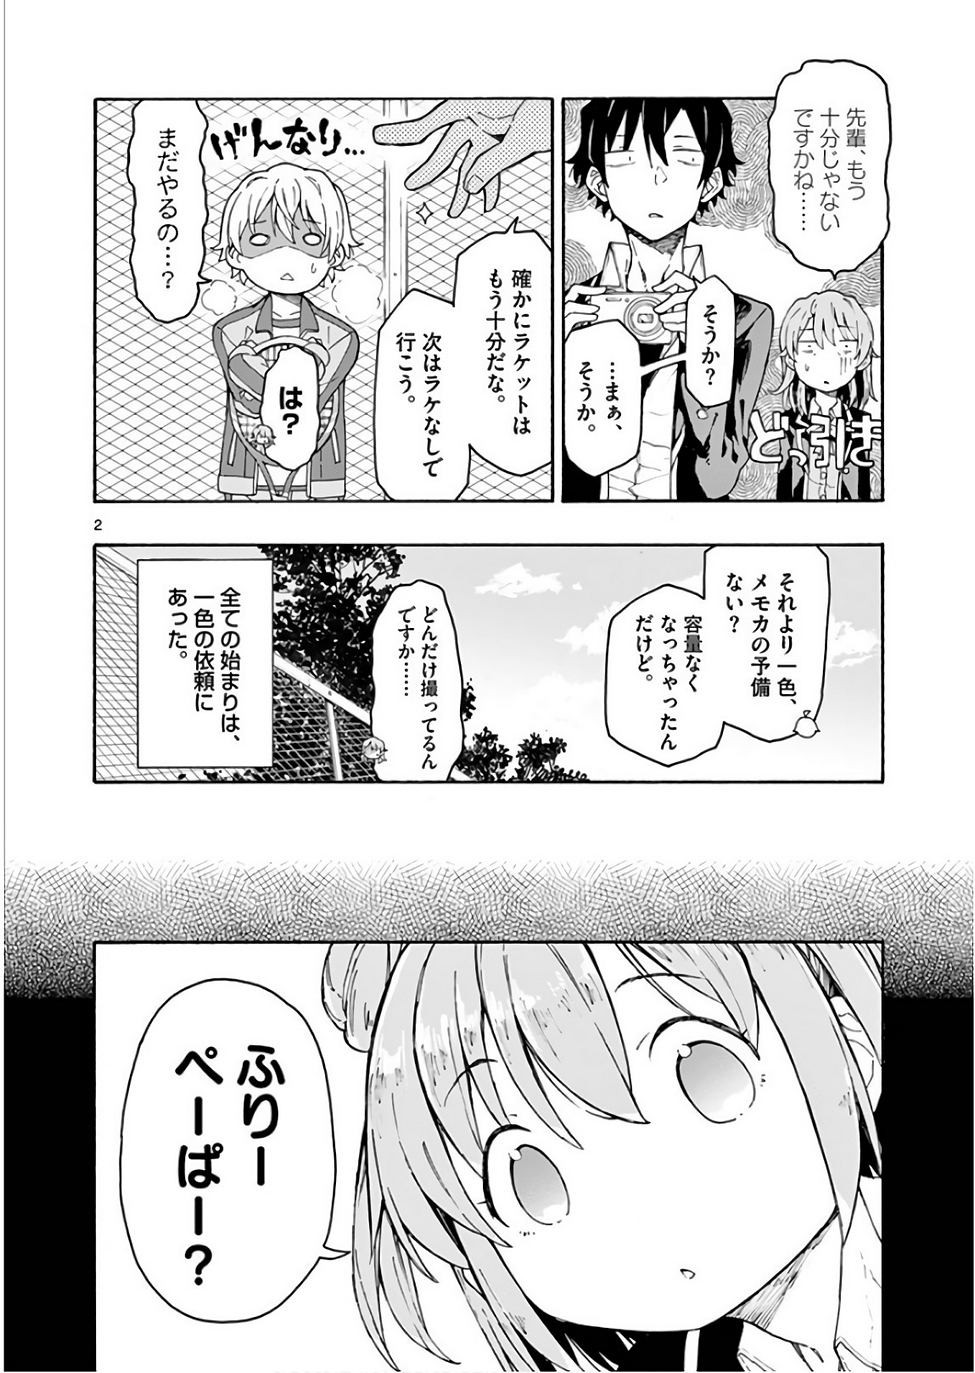 Yahari Ore no Seishun Rabukome wa Machigatte Iru. @ Comic - Chapter 72 - Page 2